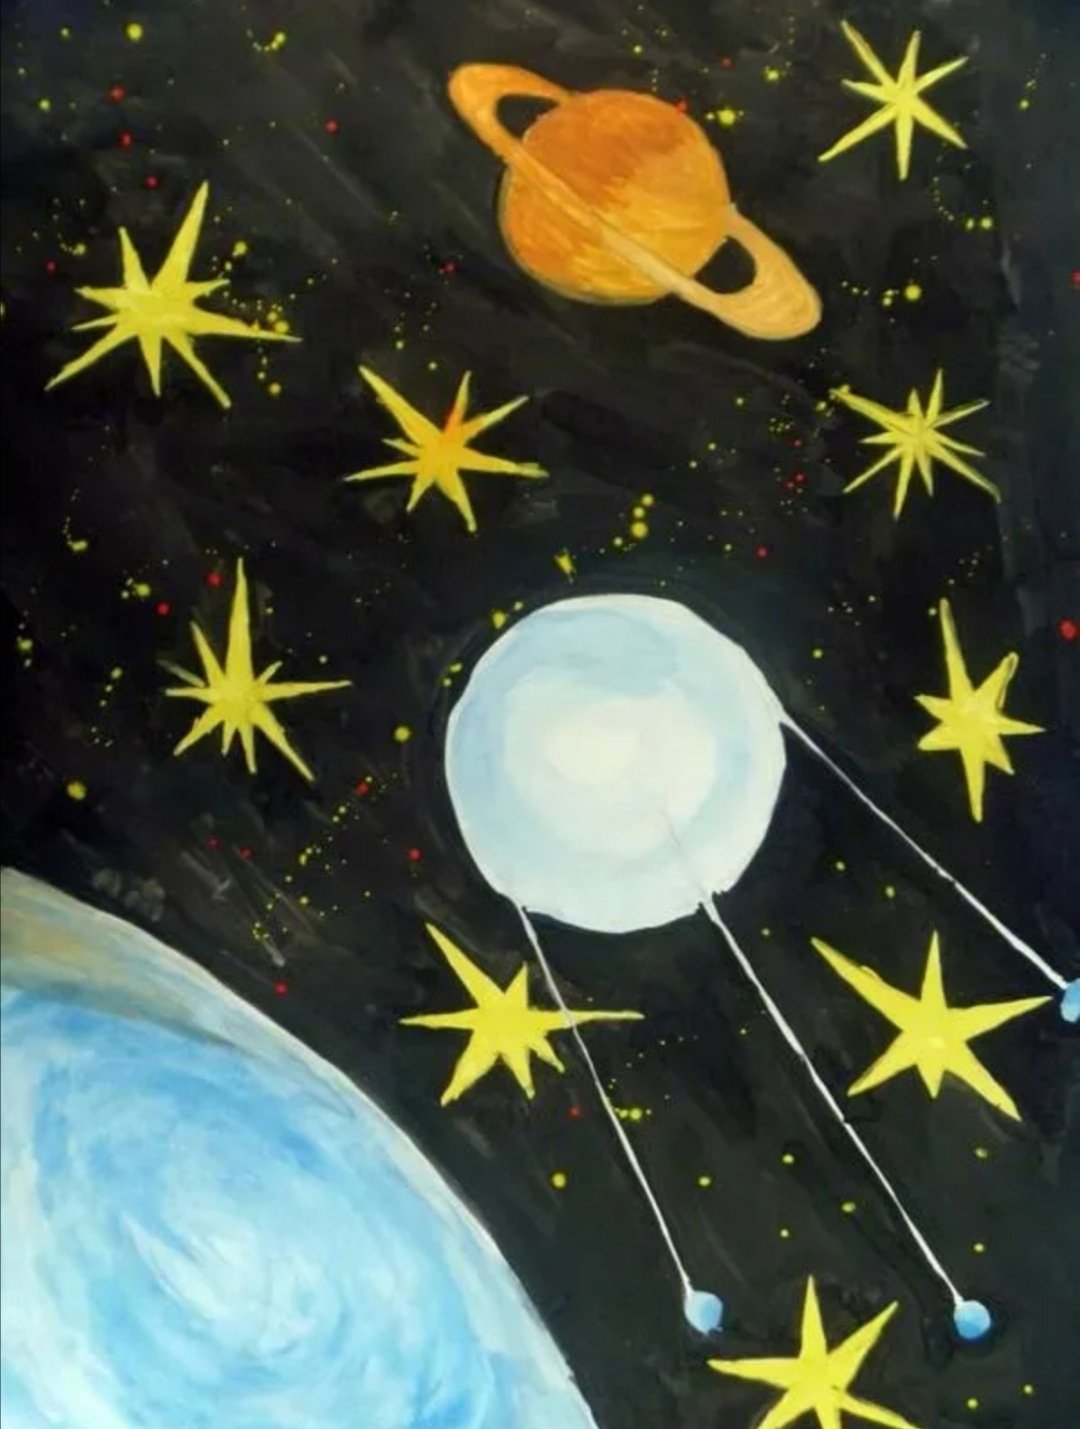 Детский рисунок звездное небо